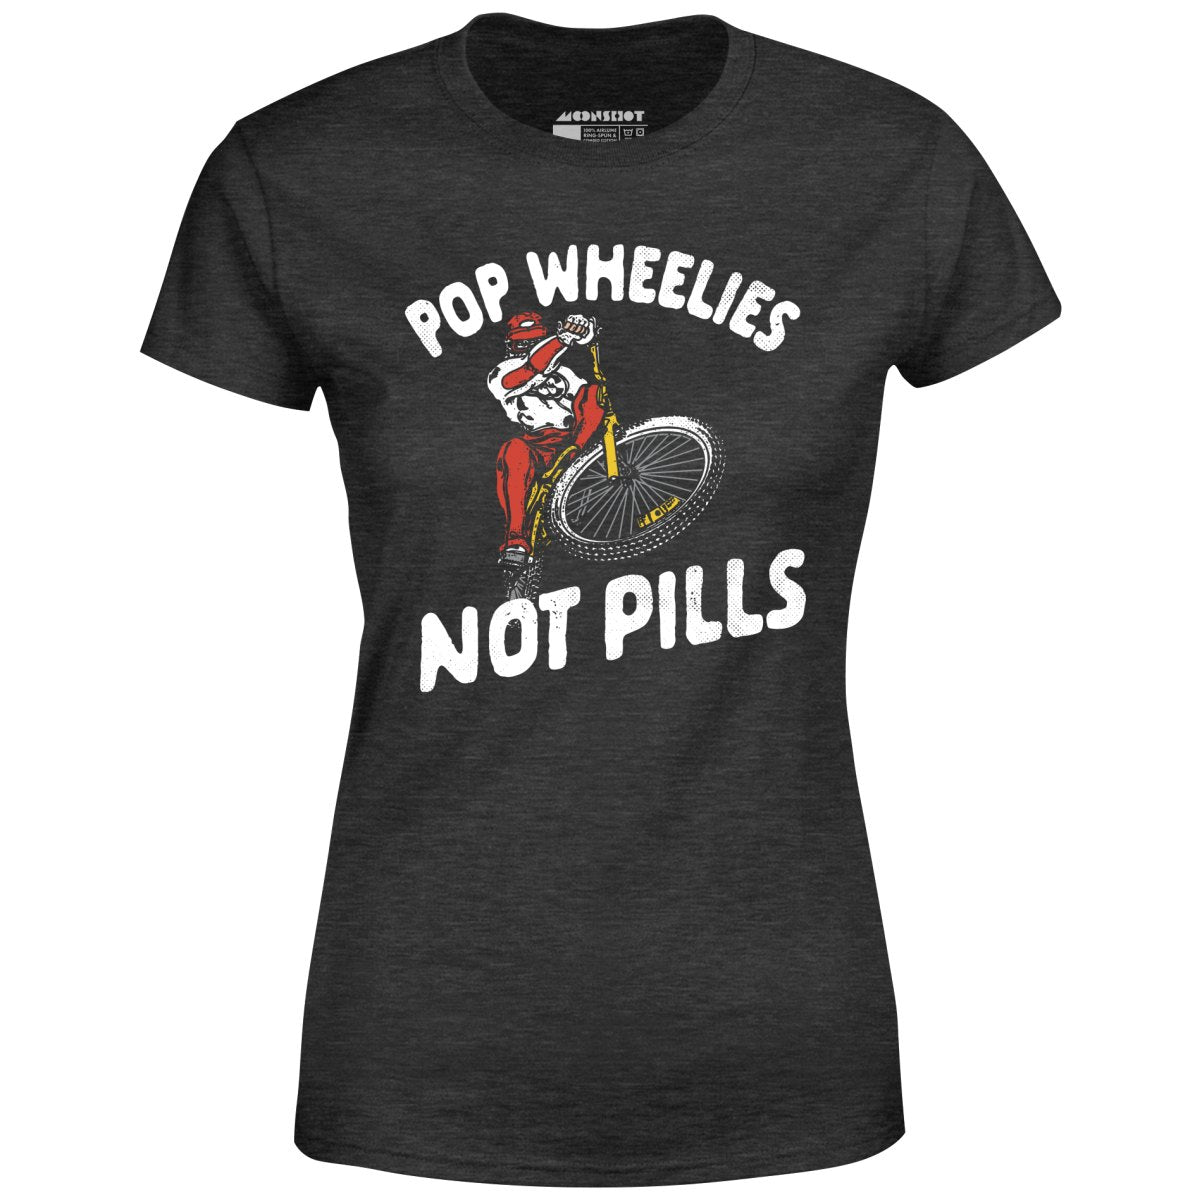 Pop Wheelies Not Pills - Women's T-Shirt